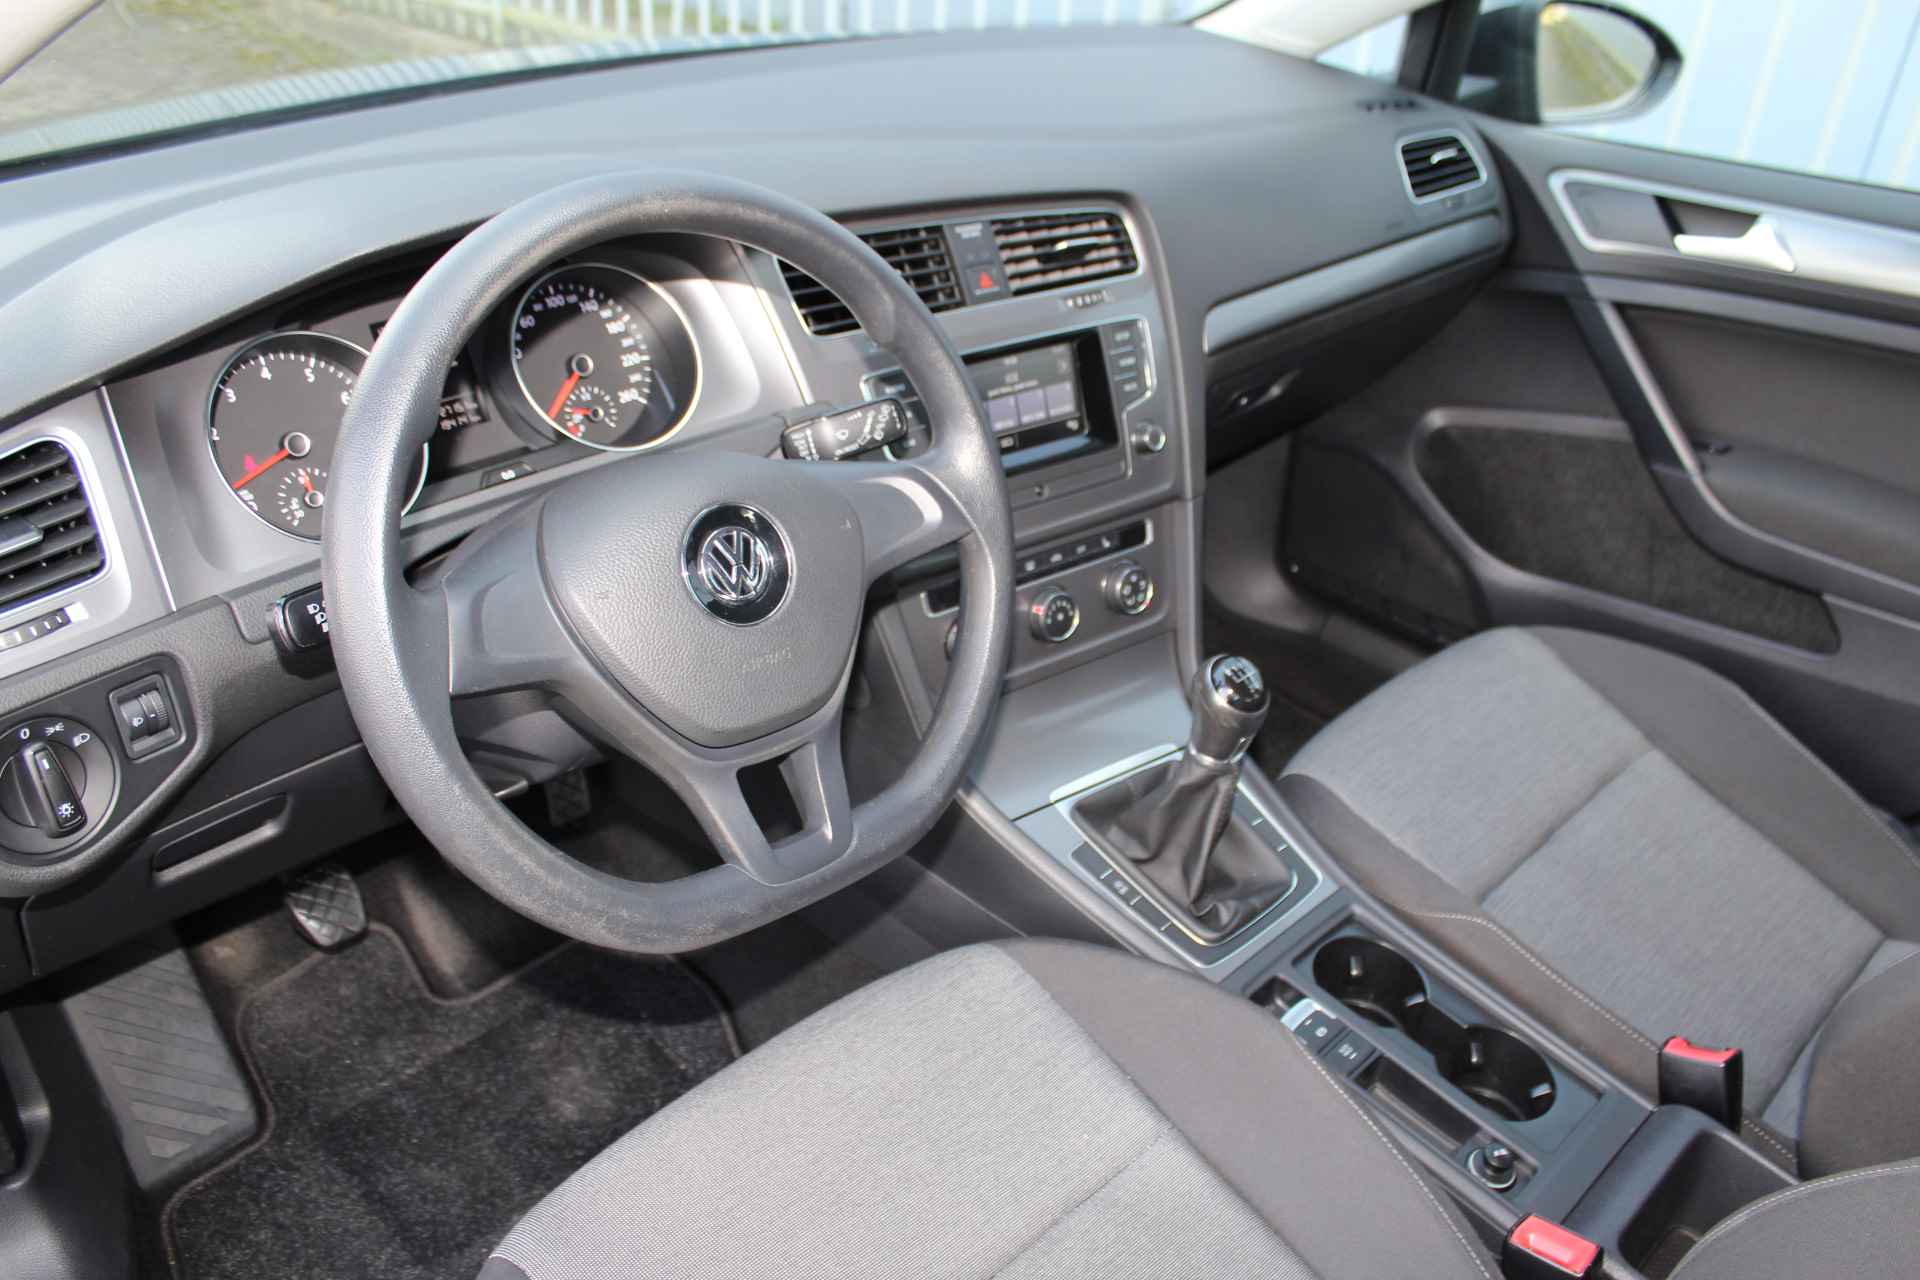 Volkswagen Golf 1.2-86pk TSI Trendline. Goede wagen voor nog jaren rijplezier ! Airco, 5drs, trekhaak, centr. vergr. afstandbediend, elektr. ramen voor en achter, verwarmde stoelen, Isofix bevestiging voor kinderzitjes, etc. - 32/40